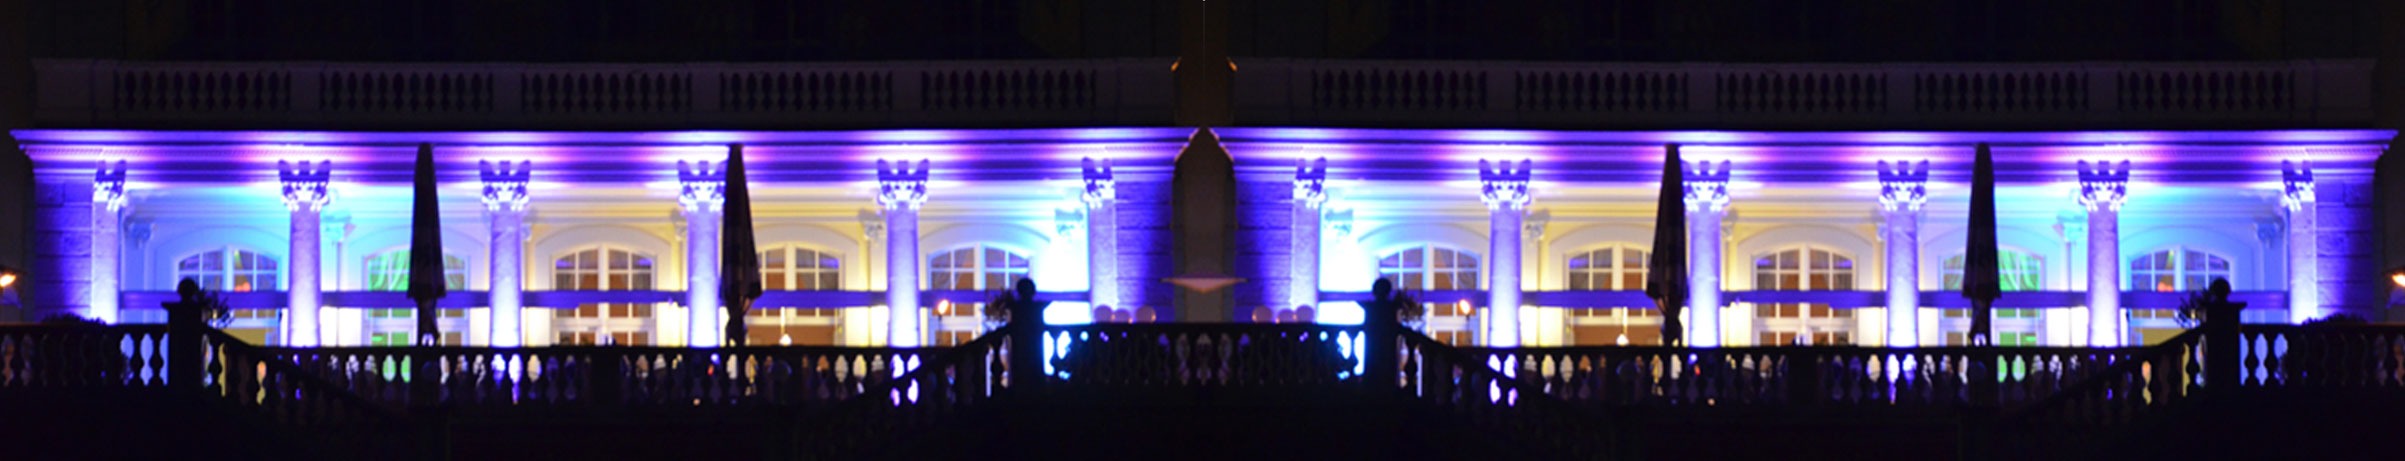 Schlosshotel von Außen bei Nacht, große Terasse mit 6 Säulen wird fantastisch in lila, türkis und gelb beleuchtet, Foto gespiegelt und nebeneinander